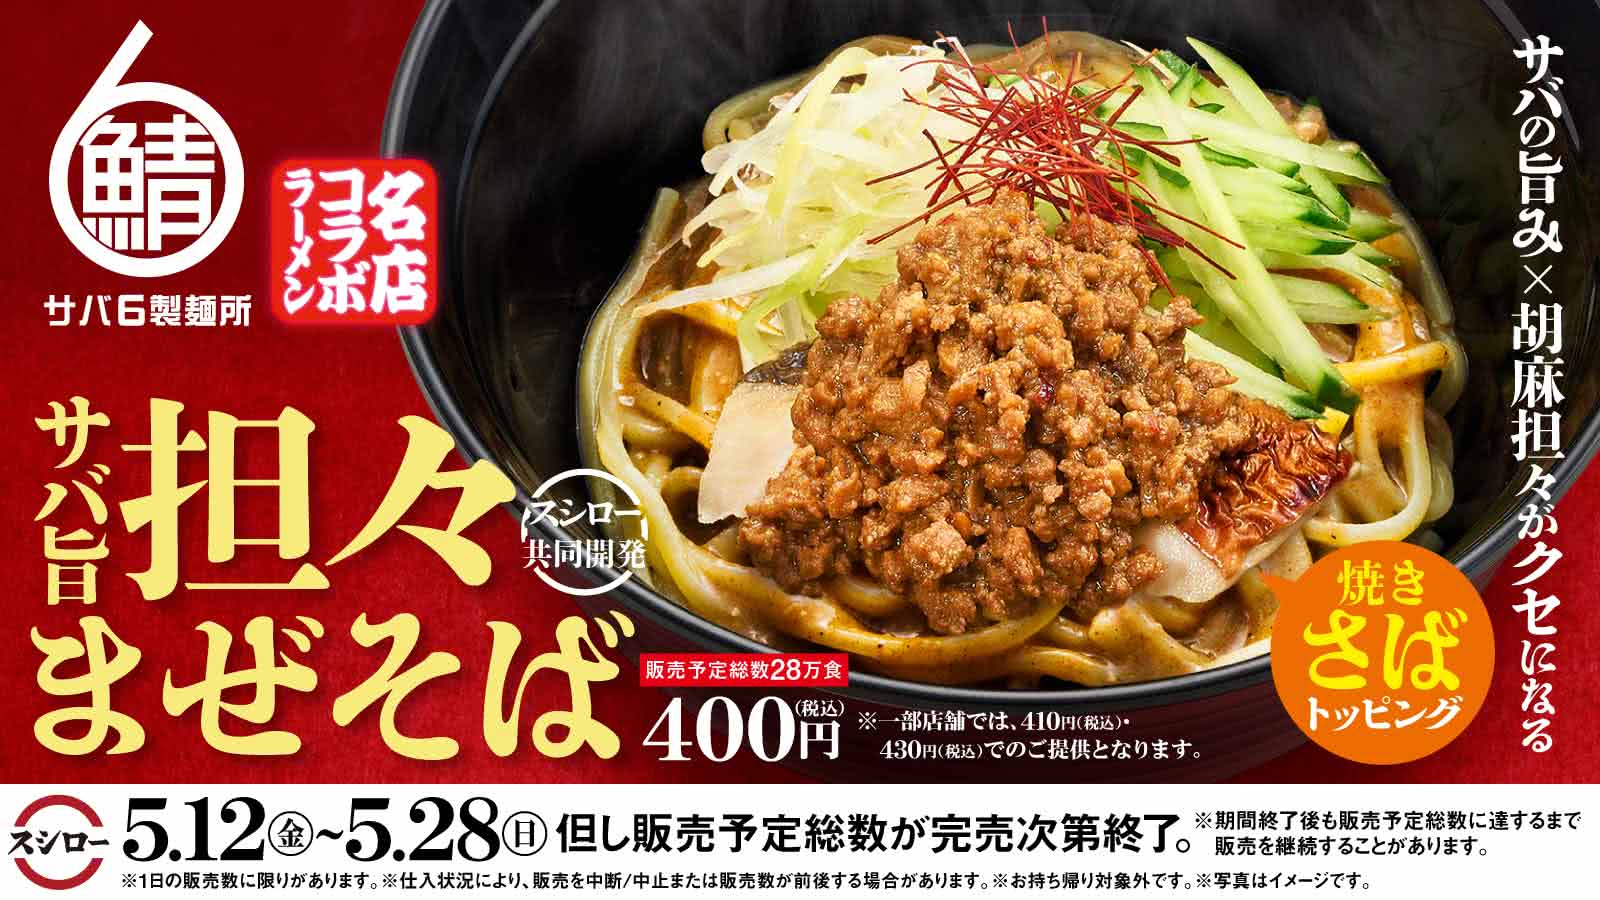 日本壽司郎 X 鯖魚6製麵所期間限定菜單：美味鯖魚擔擔拌麵從5月12至5月28日限定販售